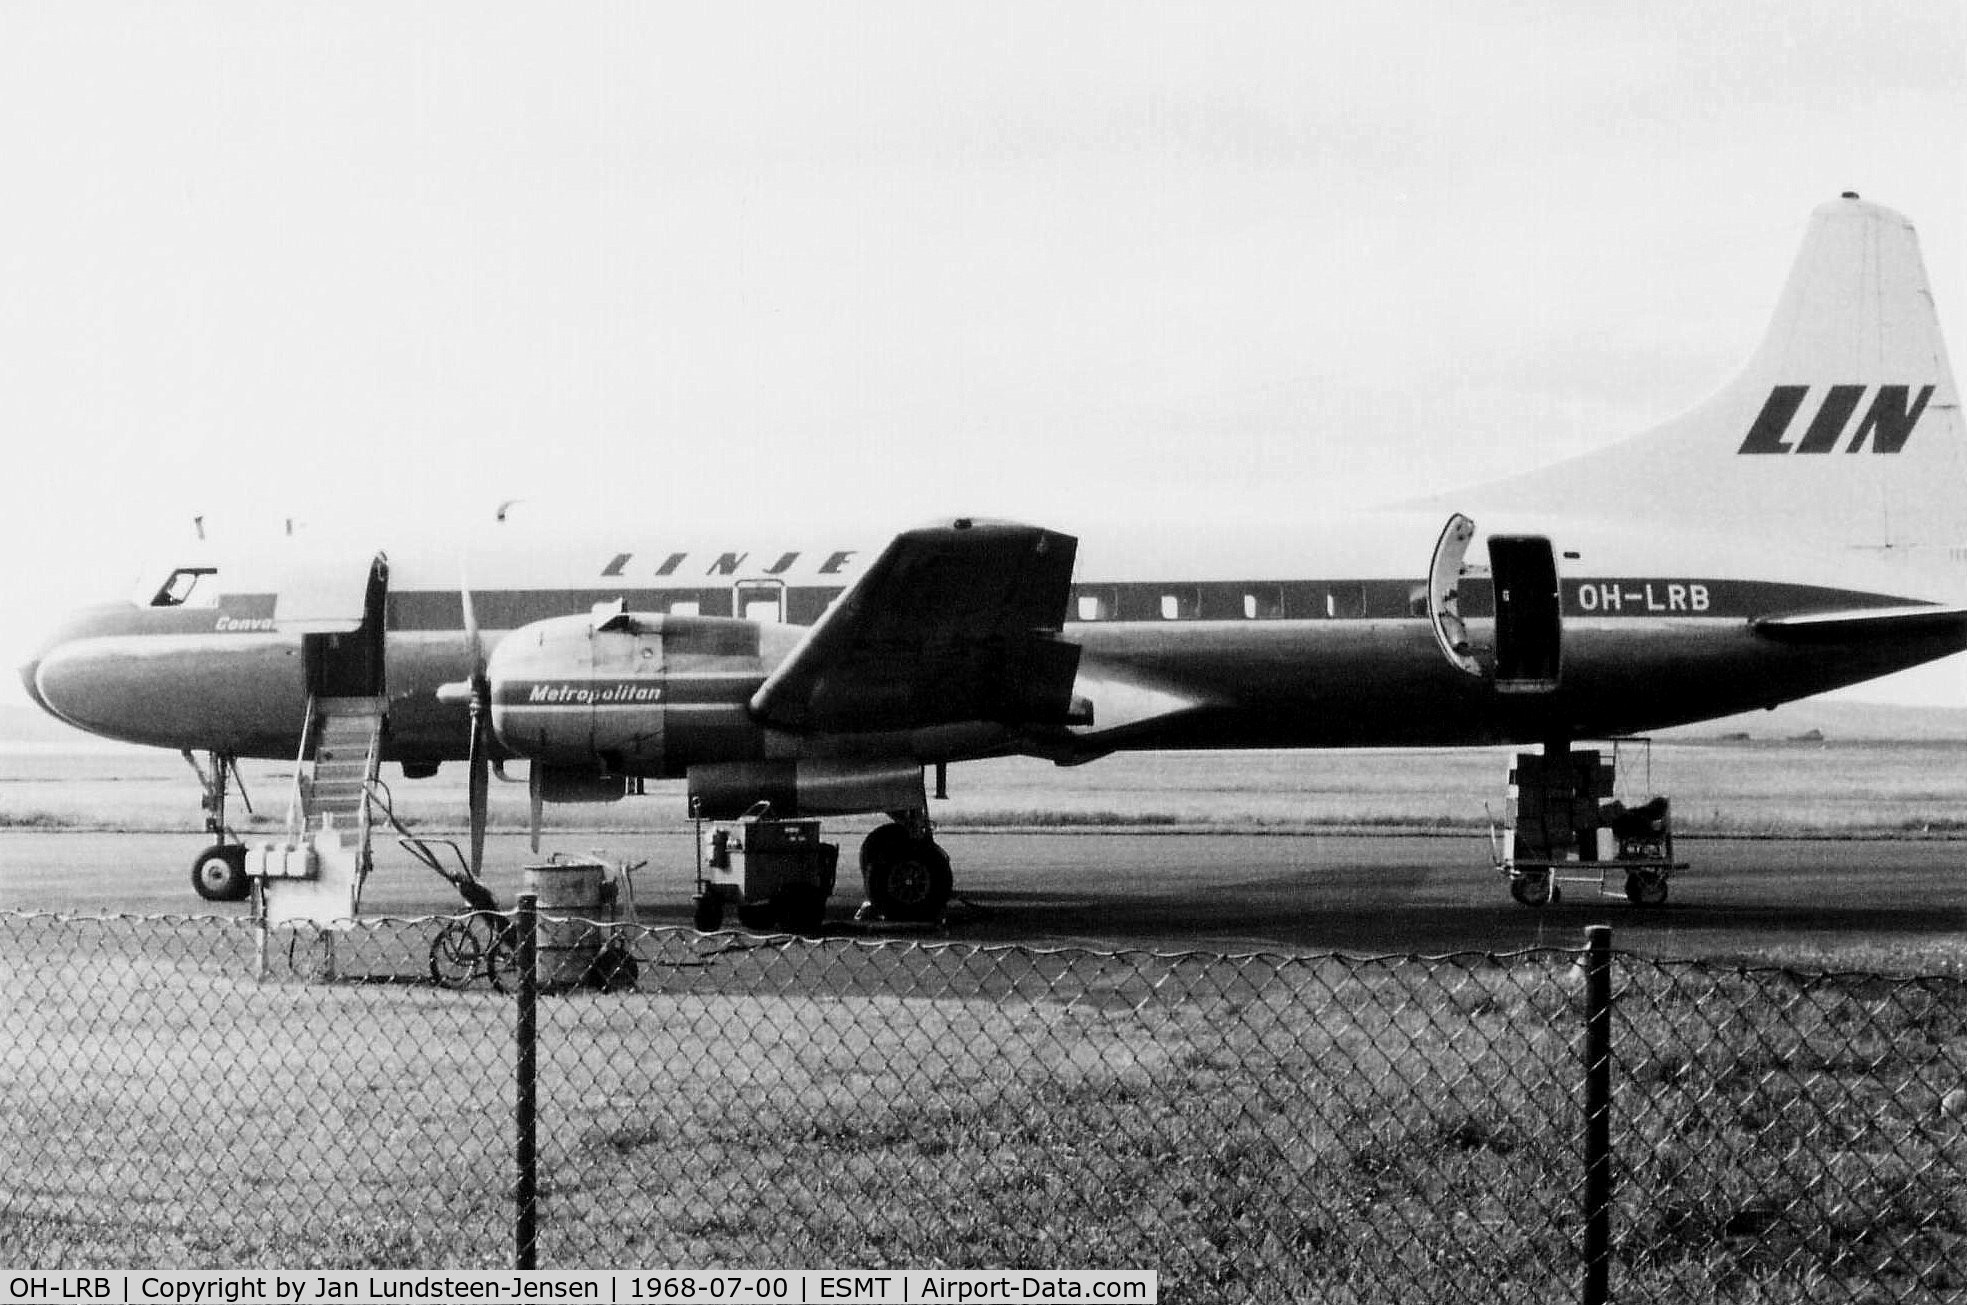 OH-LRB, 1953 Convair CV-440-40 (CV-340-40) C/N 73, Metropolitan OH-LRB from Linjeflyg seen at Halmstad Airport in Sweden in July 1968. Linjeflyg had leased OH-LRB from Finnair 1968-1969.